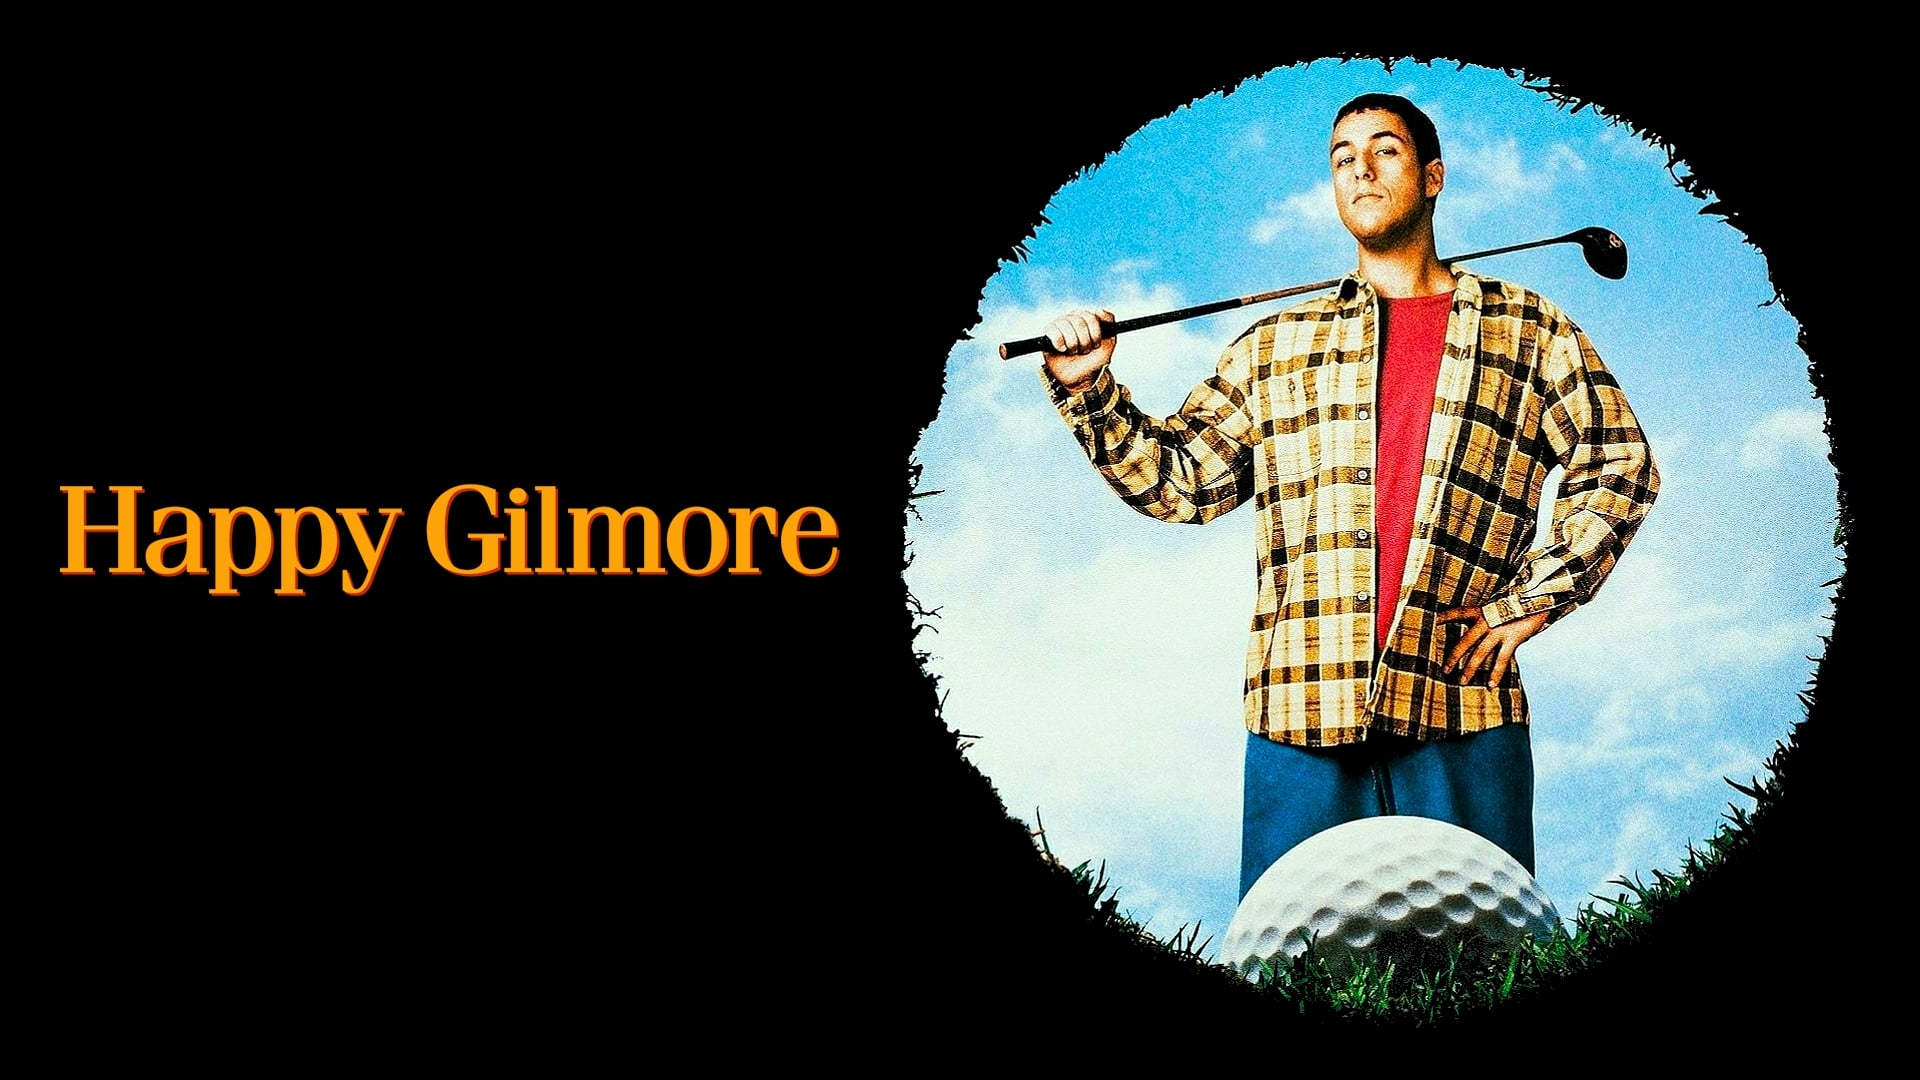 O Maluco do Golfe (1996)